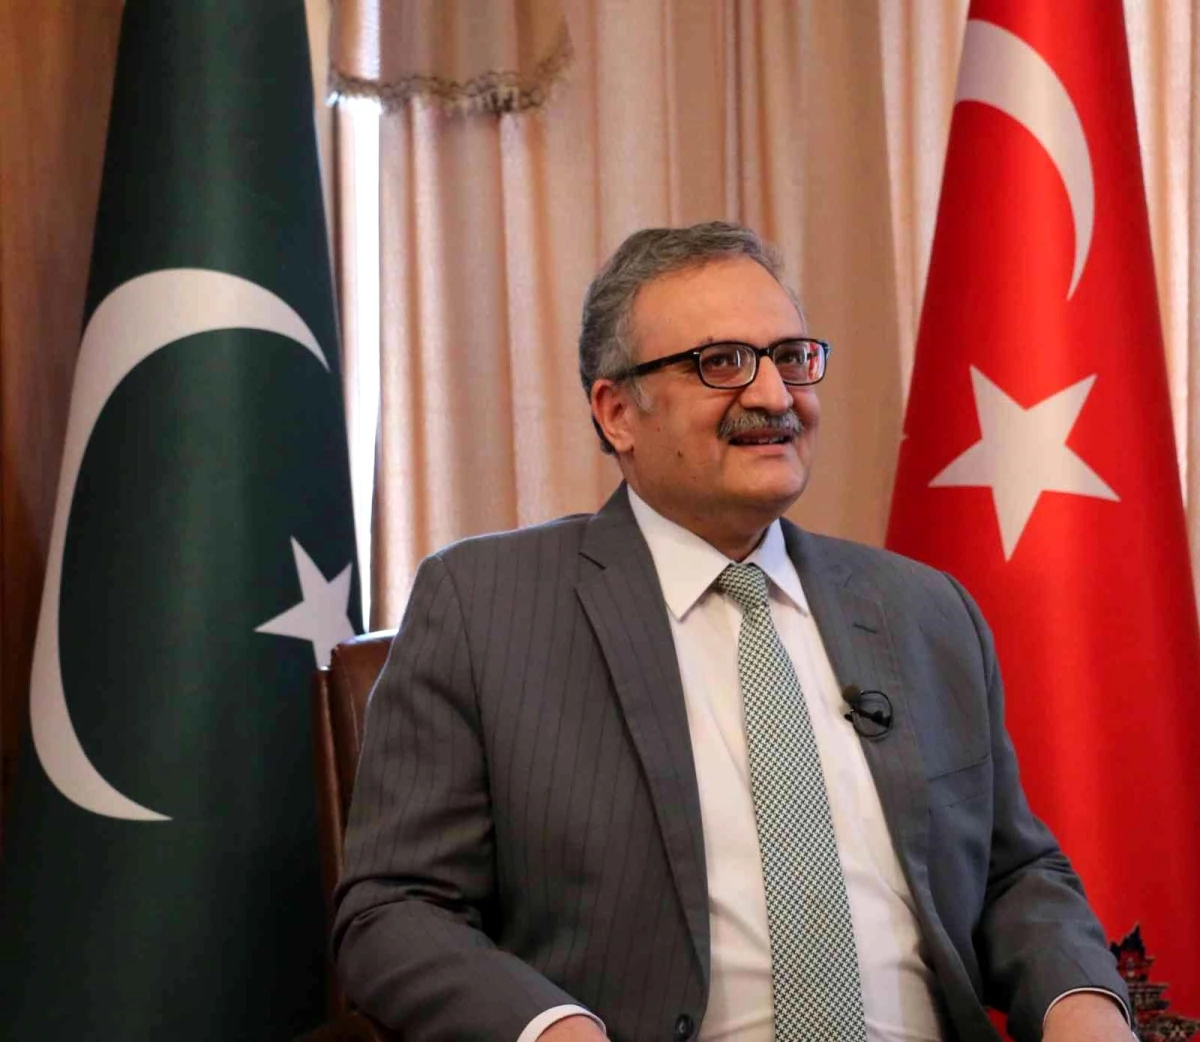 Pakistan Büyükelçisi Qazi: "Pakistan\'da hem Türkiye hem de Azerbaycan halkına çok derin bir iyi niyet duygusu hakim"